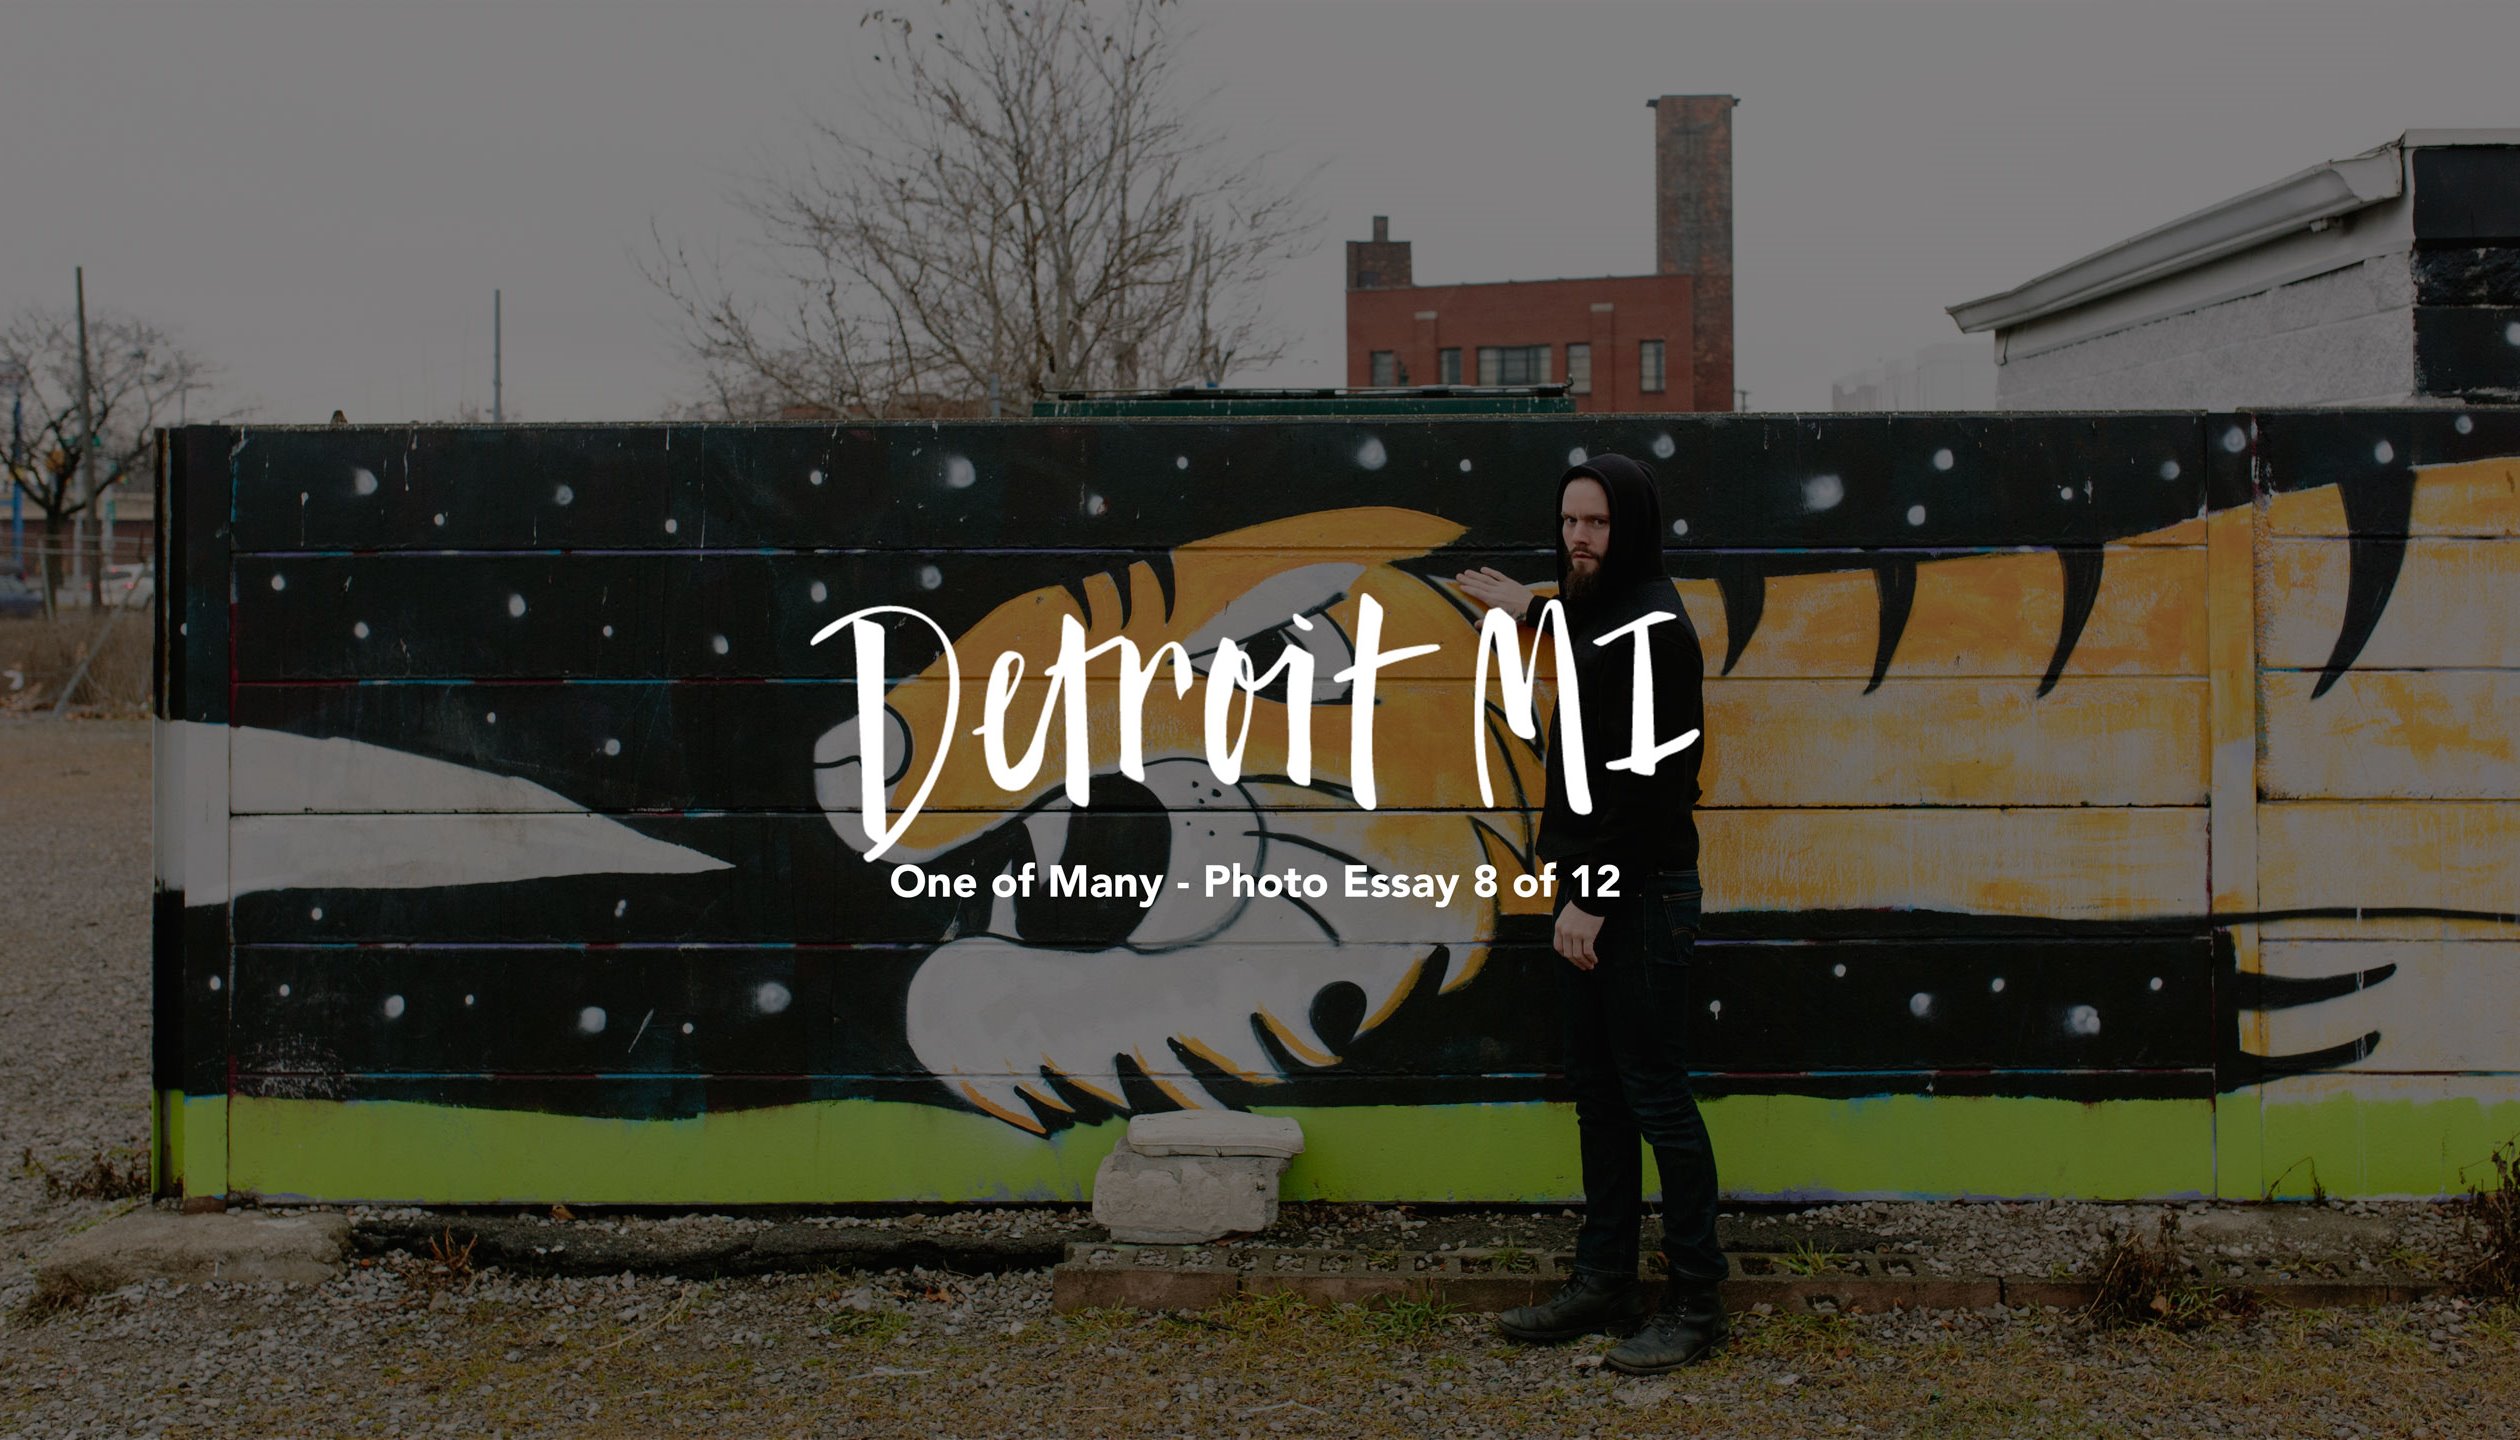 Read Detroit, MI by Wesley Verhoeve